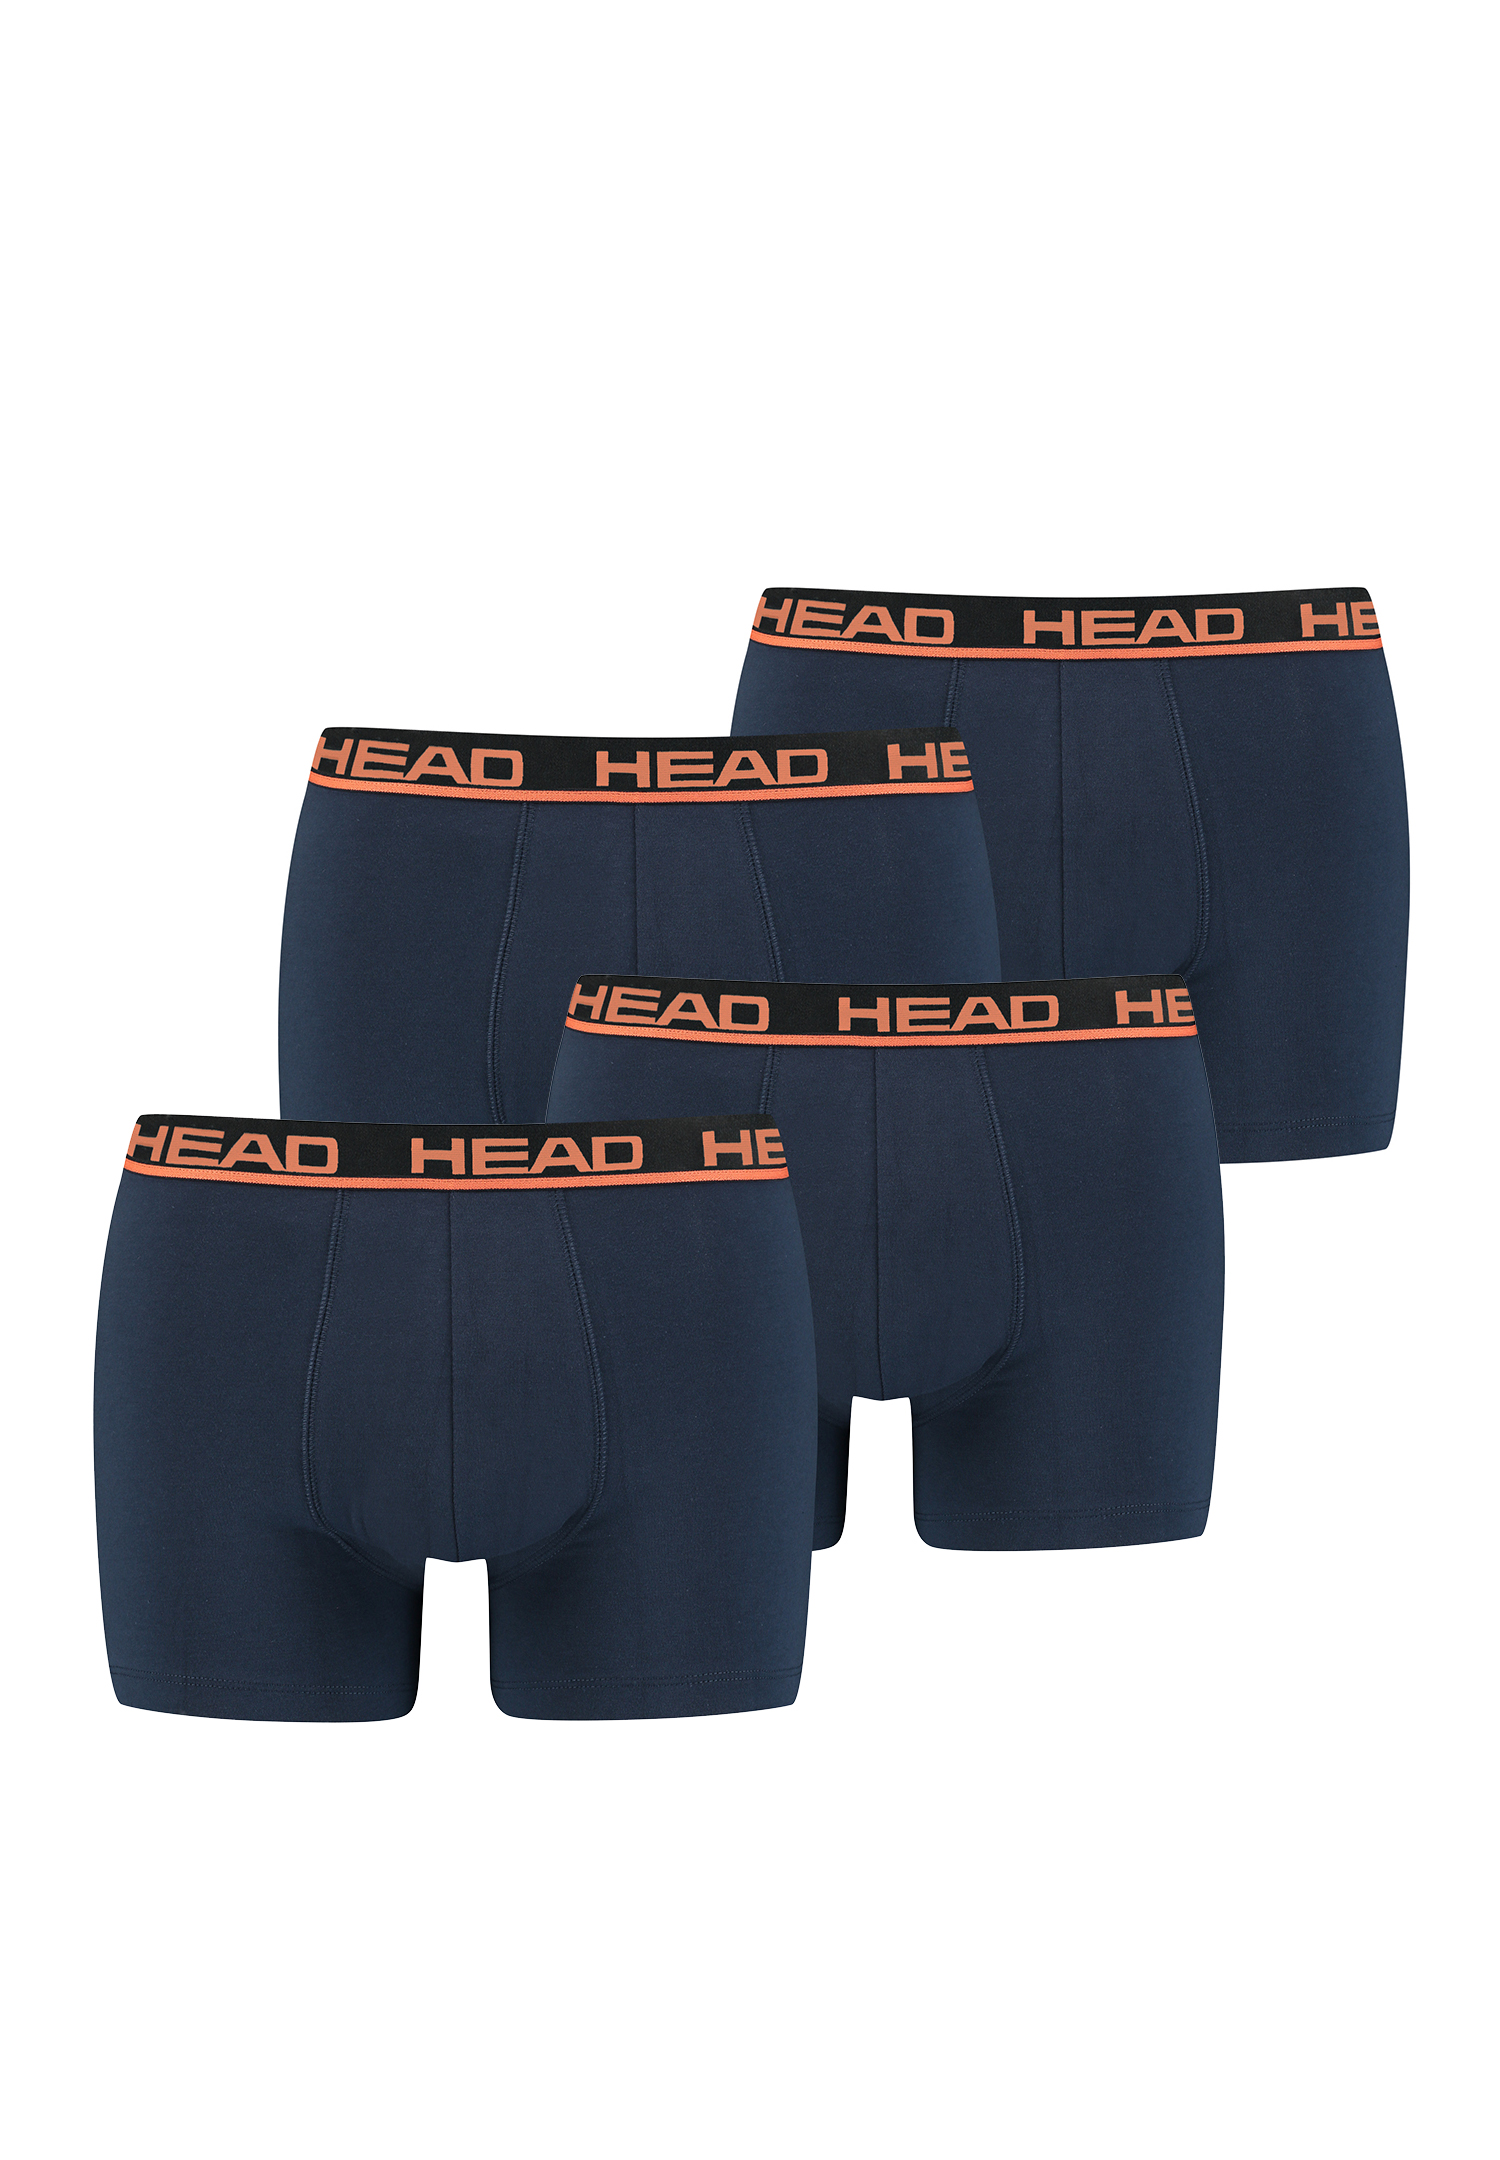 HEAD Herren Boxershorts Unterwäsche 8P (Blue/Orange, S)